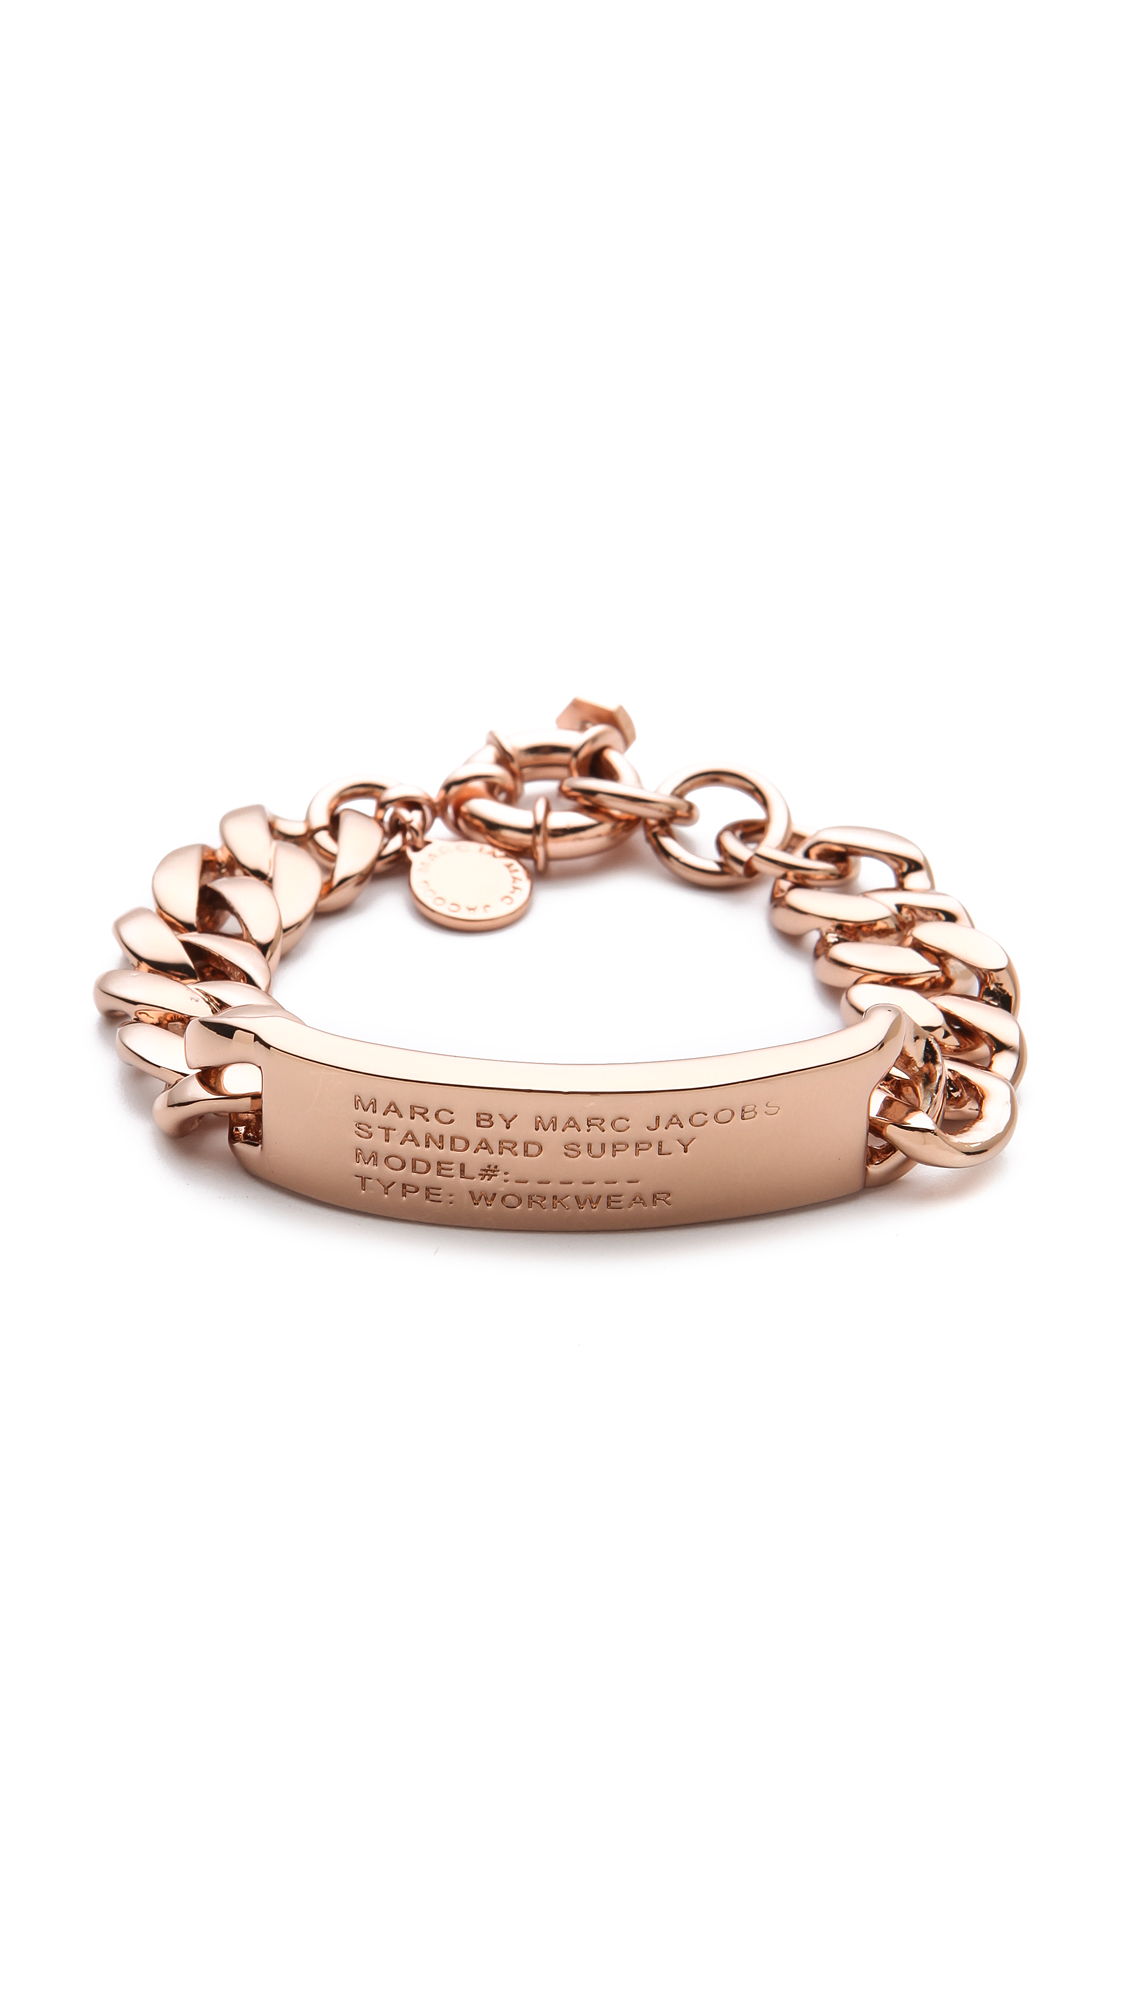 Marc By Marc Jacobs Standard Supply Id Bracelet in Metallic | Lyst